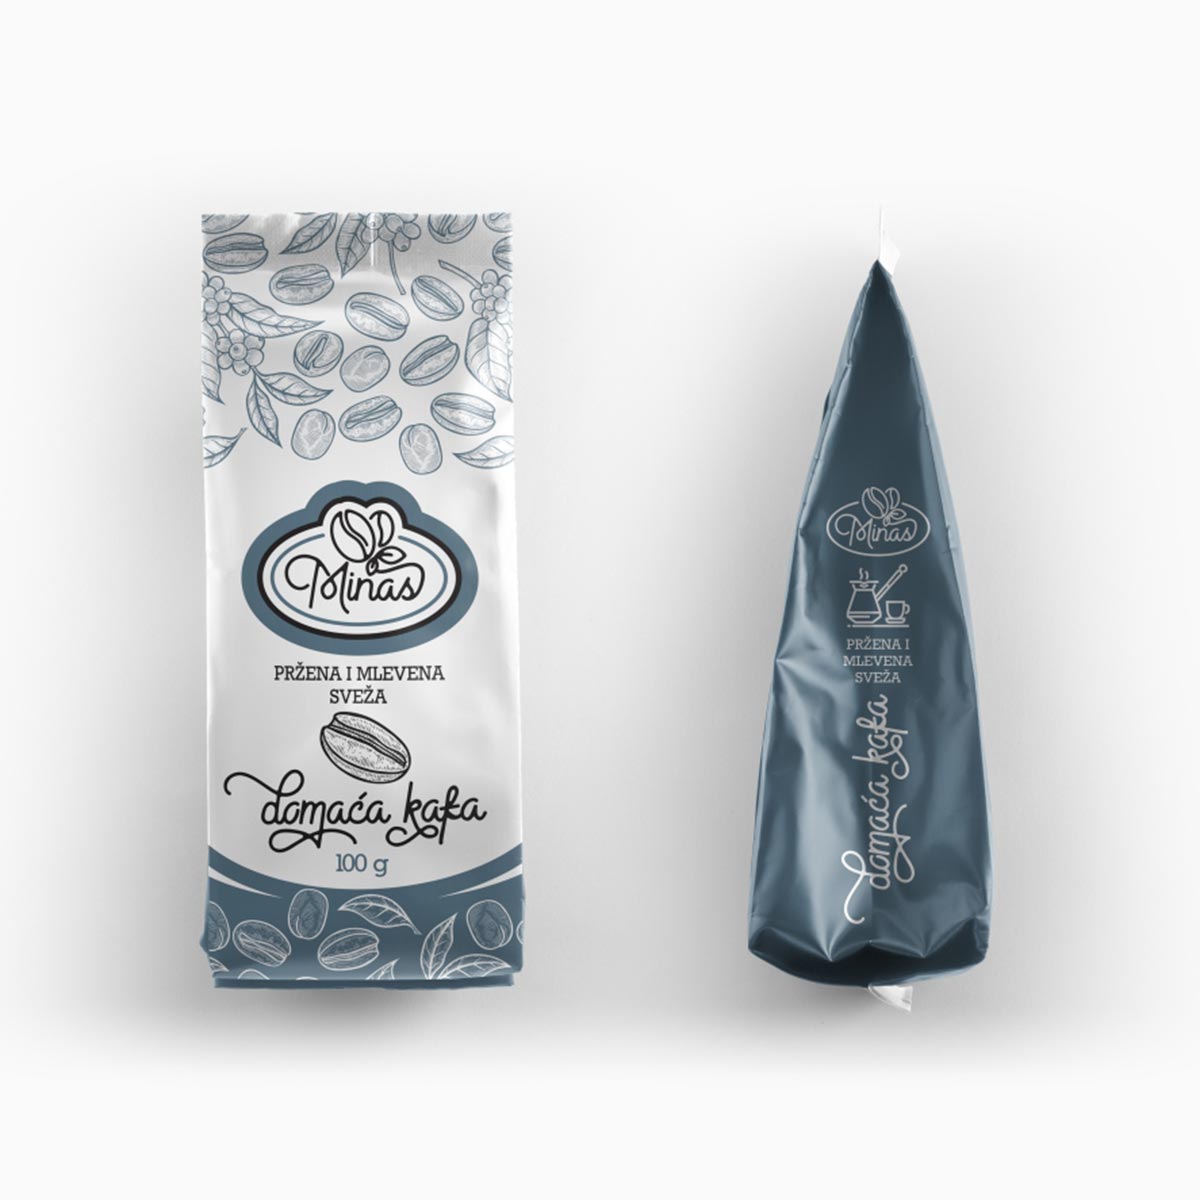 Minas kafa packaging design